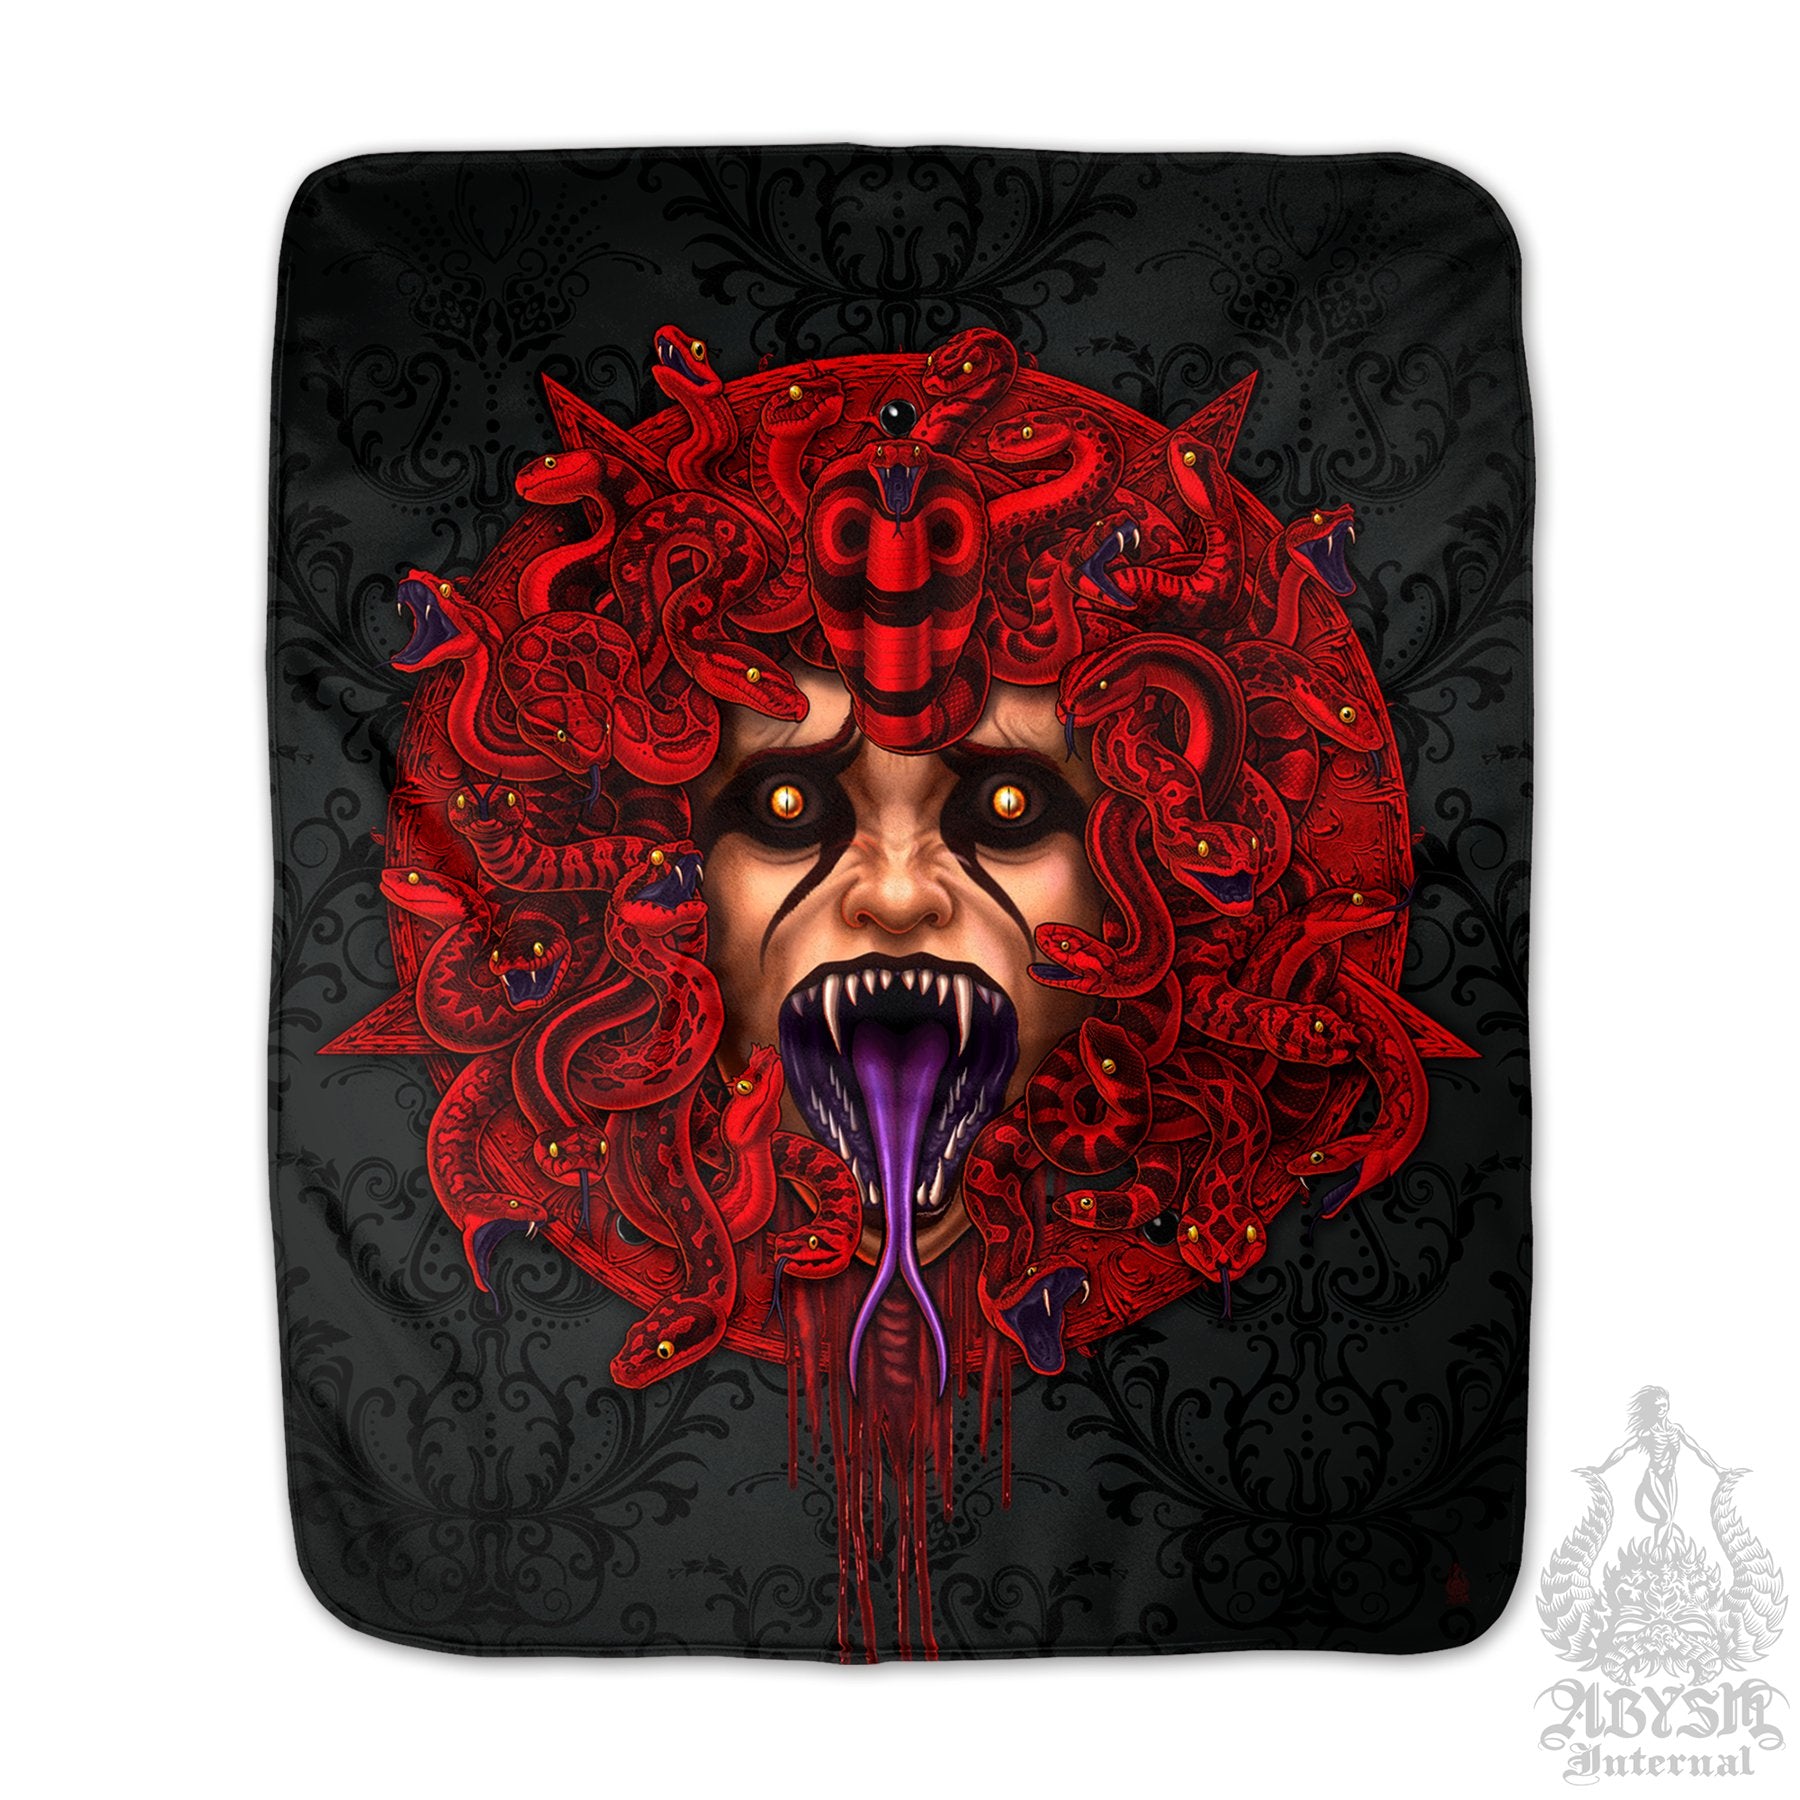 Pentagram Sherpa Fleece Throw Blanket, Satanic Demon Medusa, Goth Horror Decor, Alternative Skull Art Gift - Red Snakes, 3 Faces - Abysm Internal